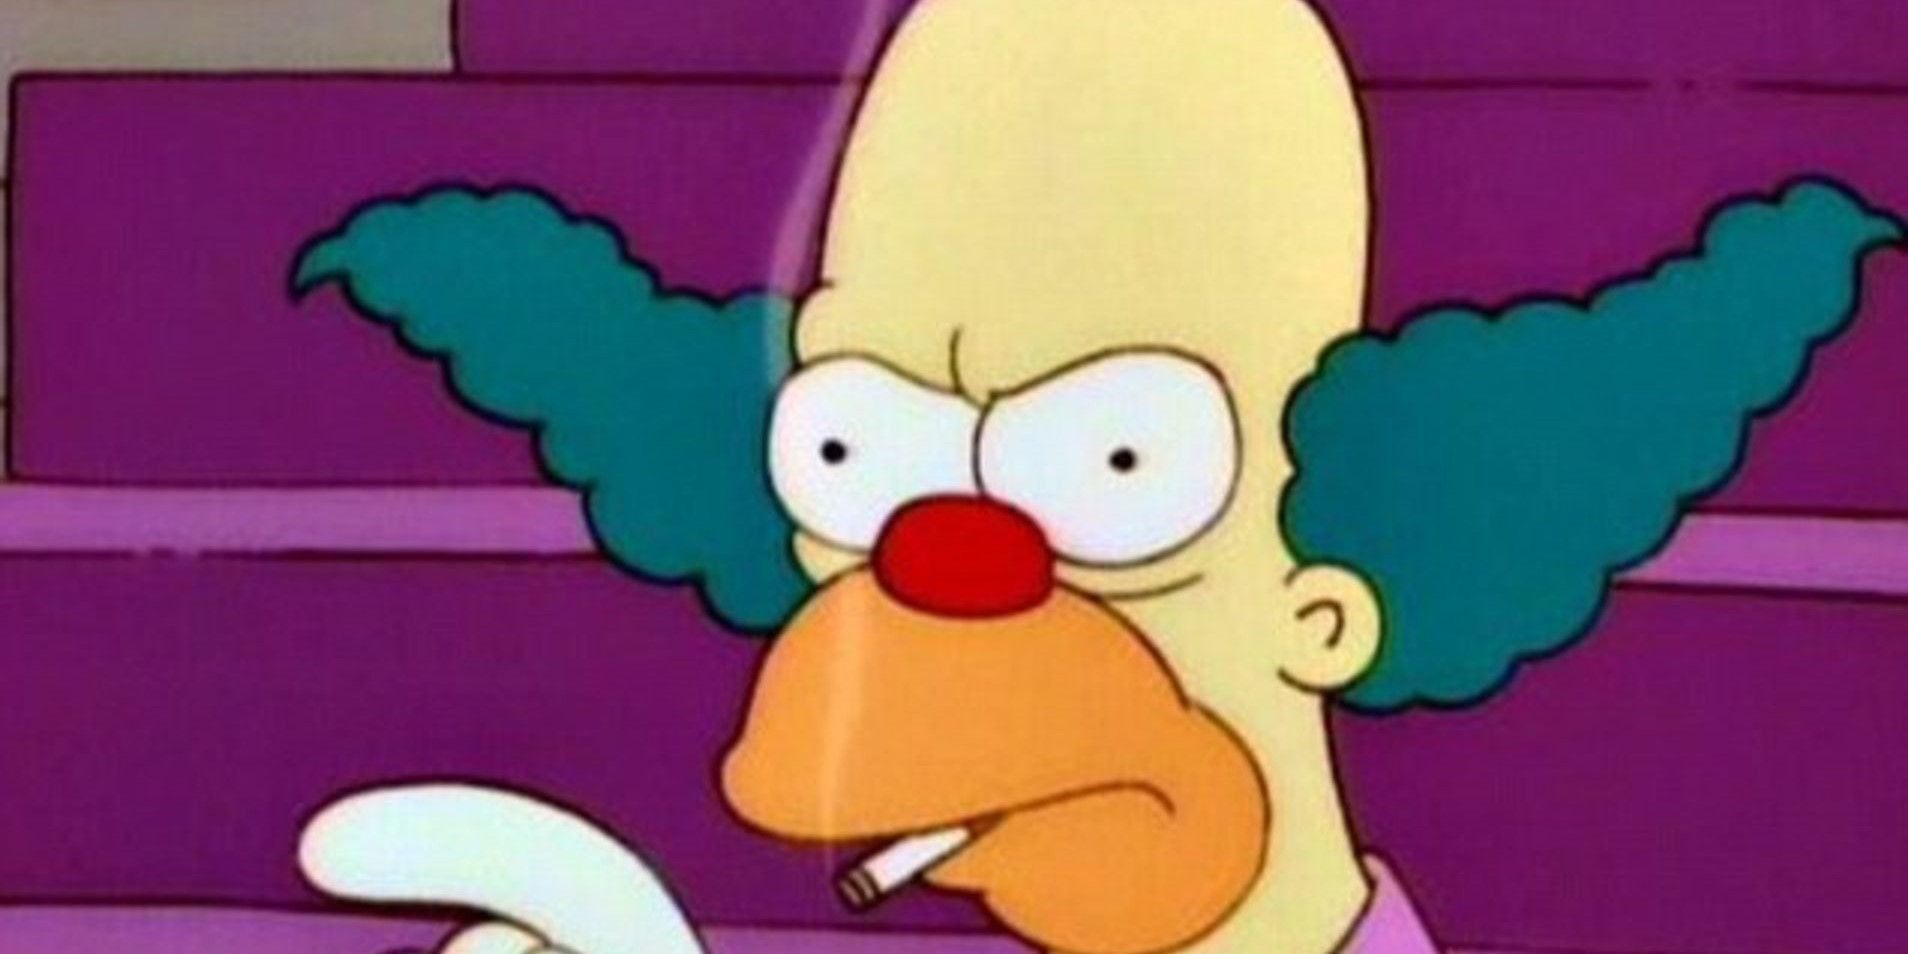 krusty-the-clown-smoking